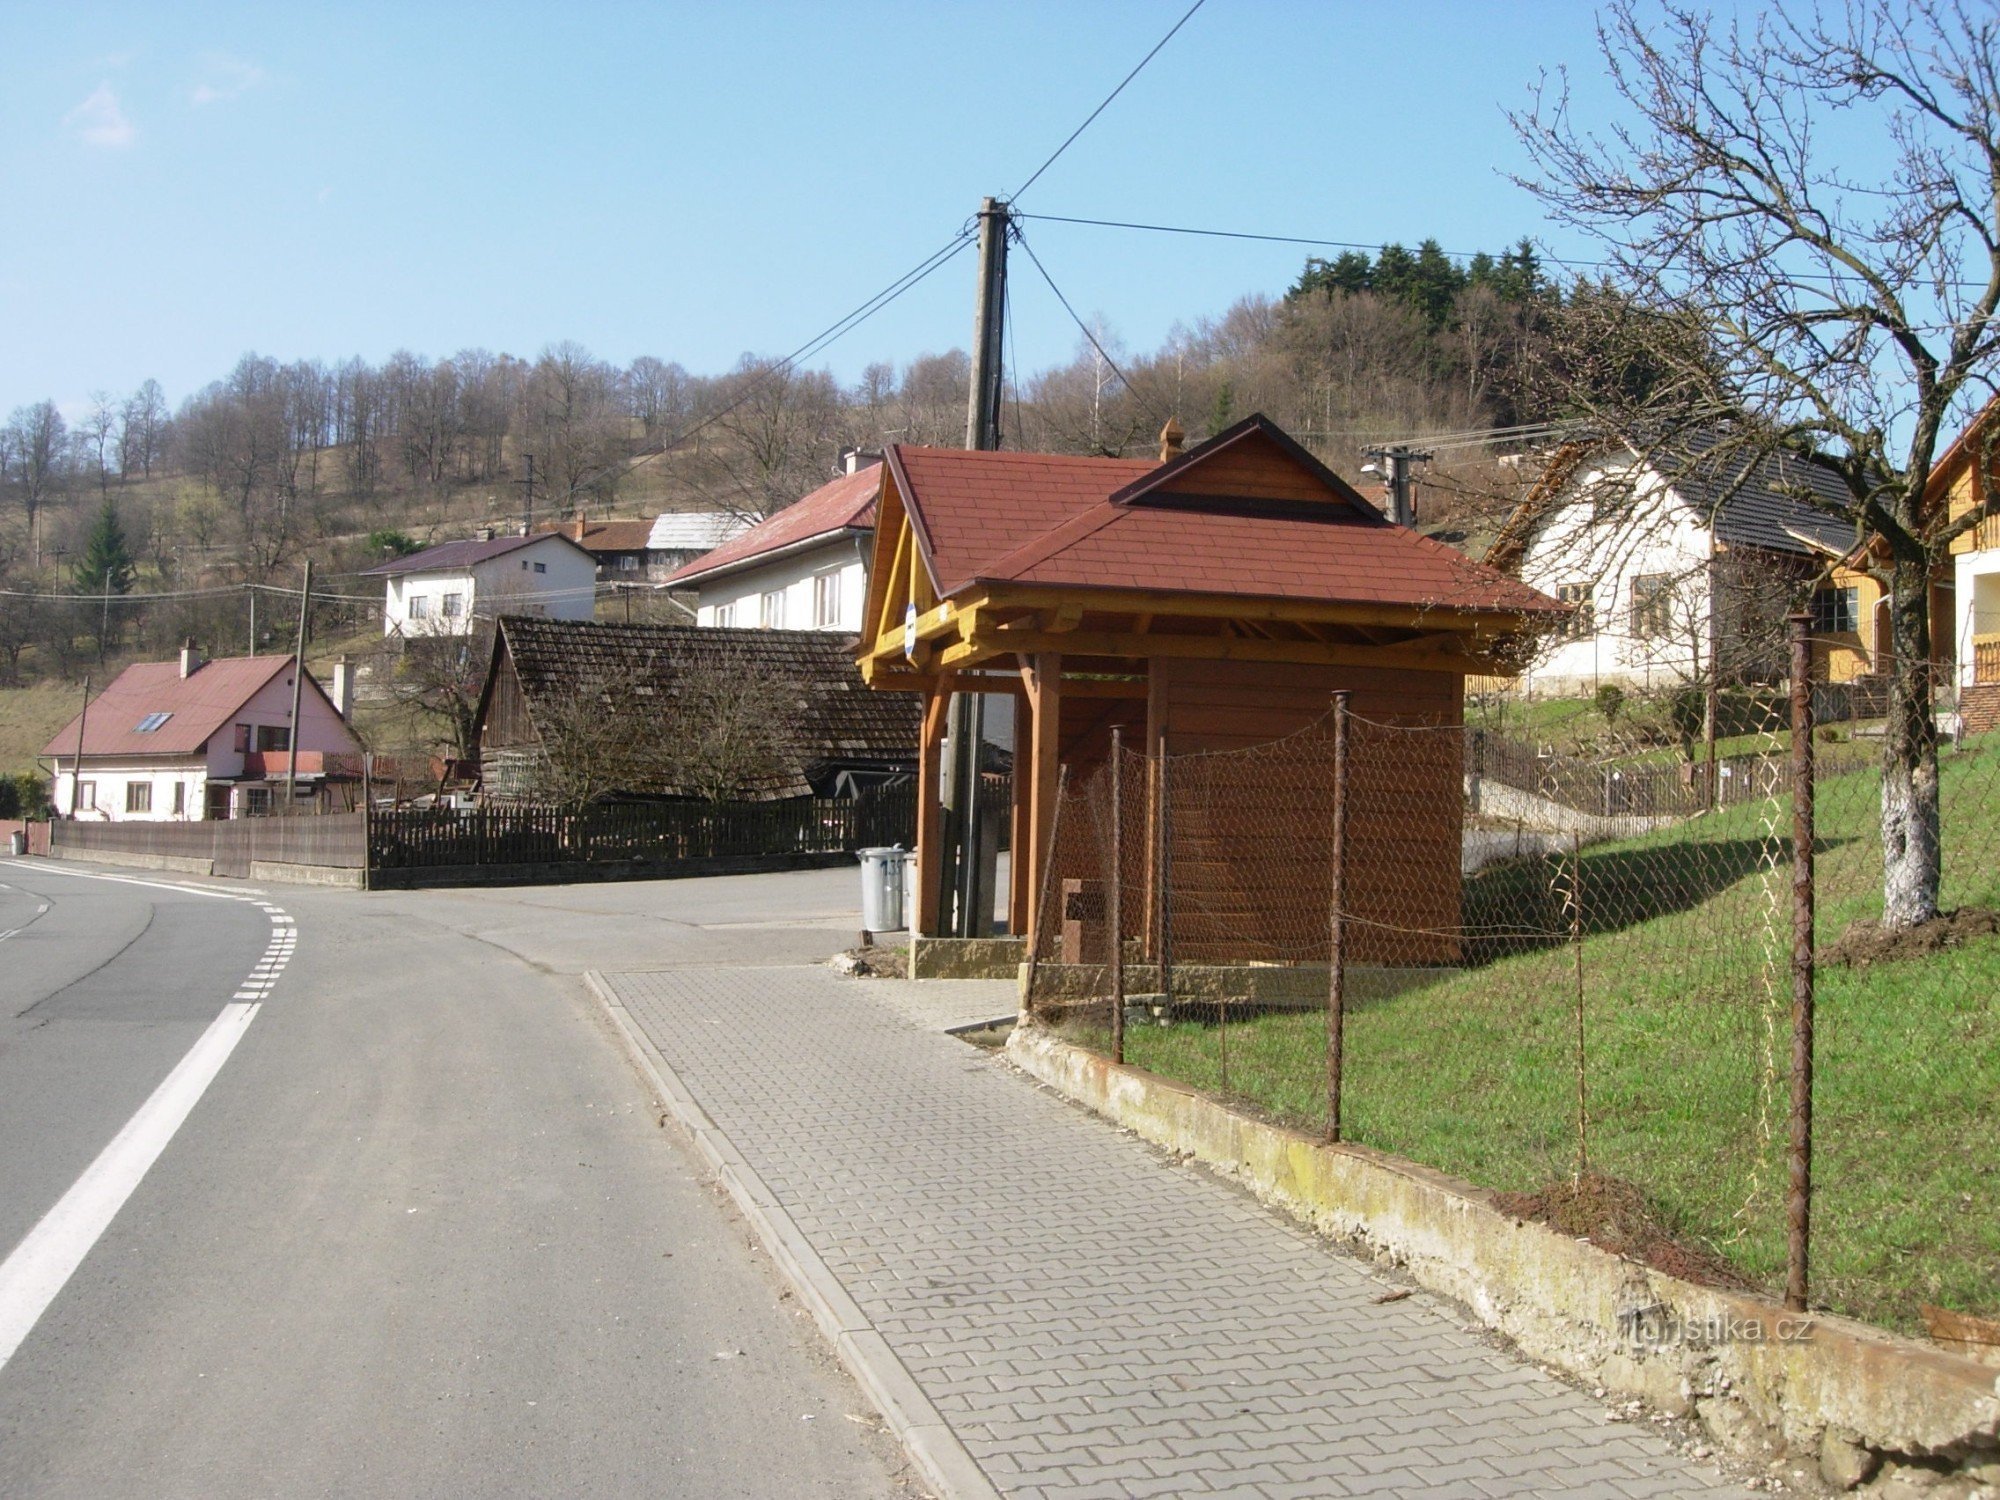 ČSAD stop bij het motorstation